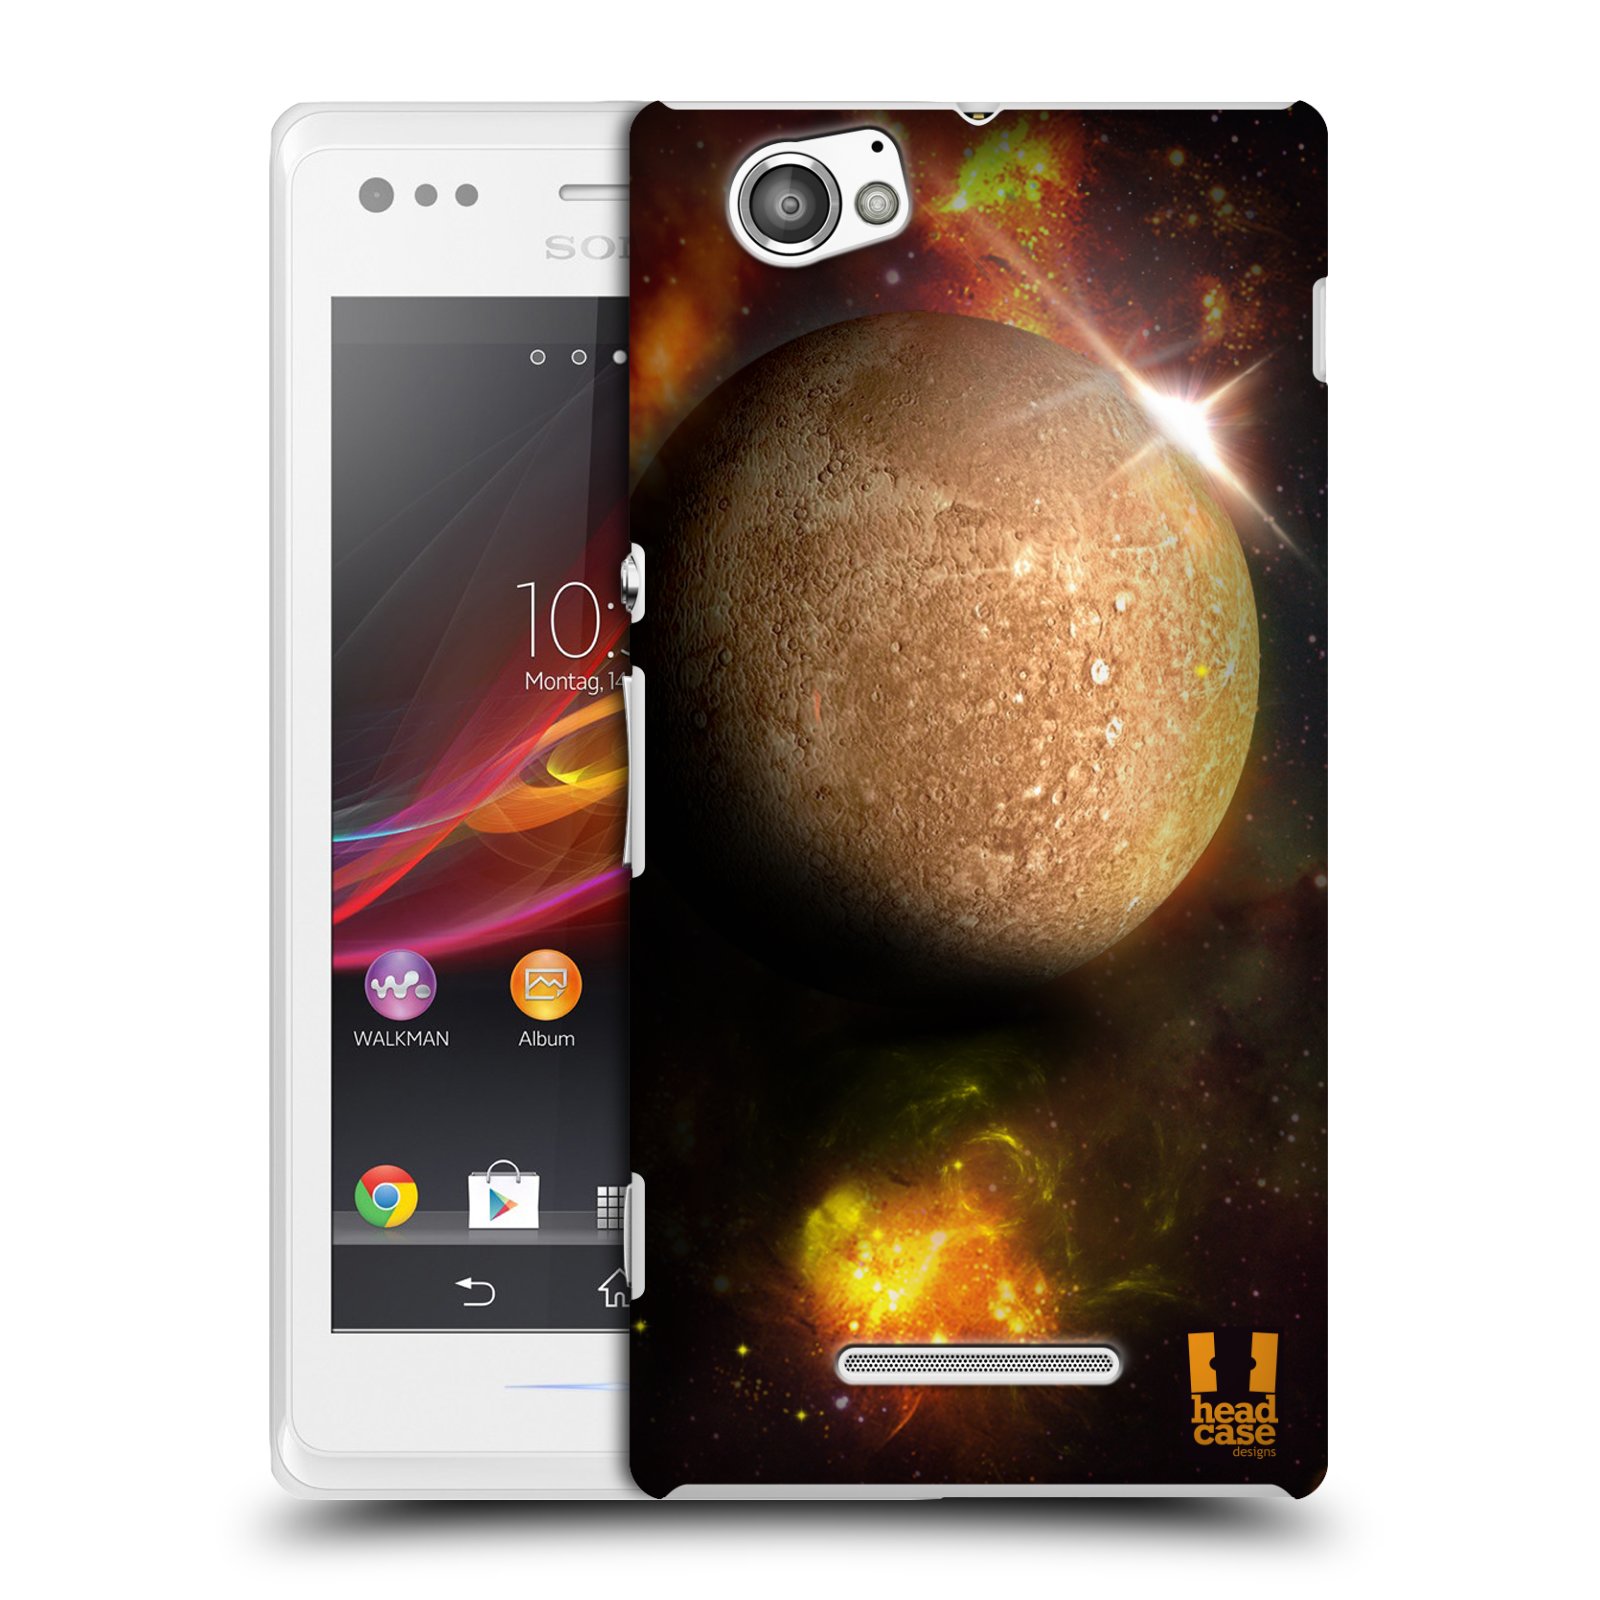 HEAD CASE plastový obal na mobil Sony Xperia M vzor Vesmírná krása MERKUR PLANETA